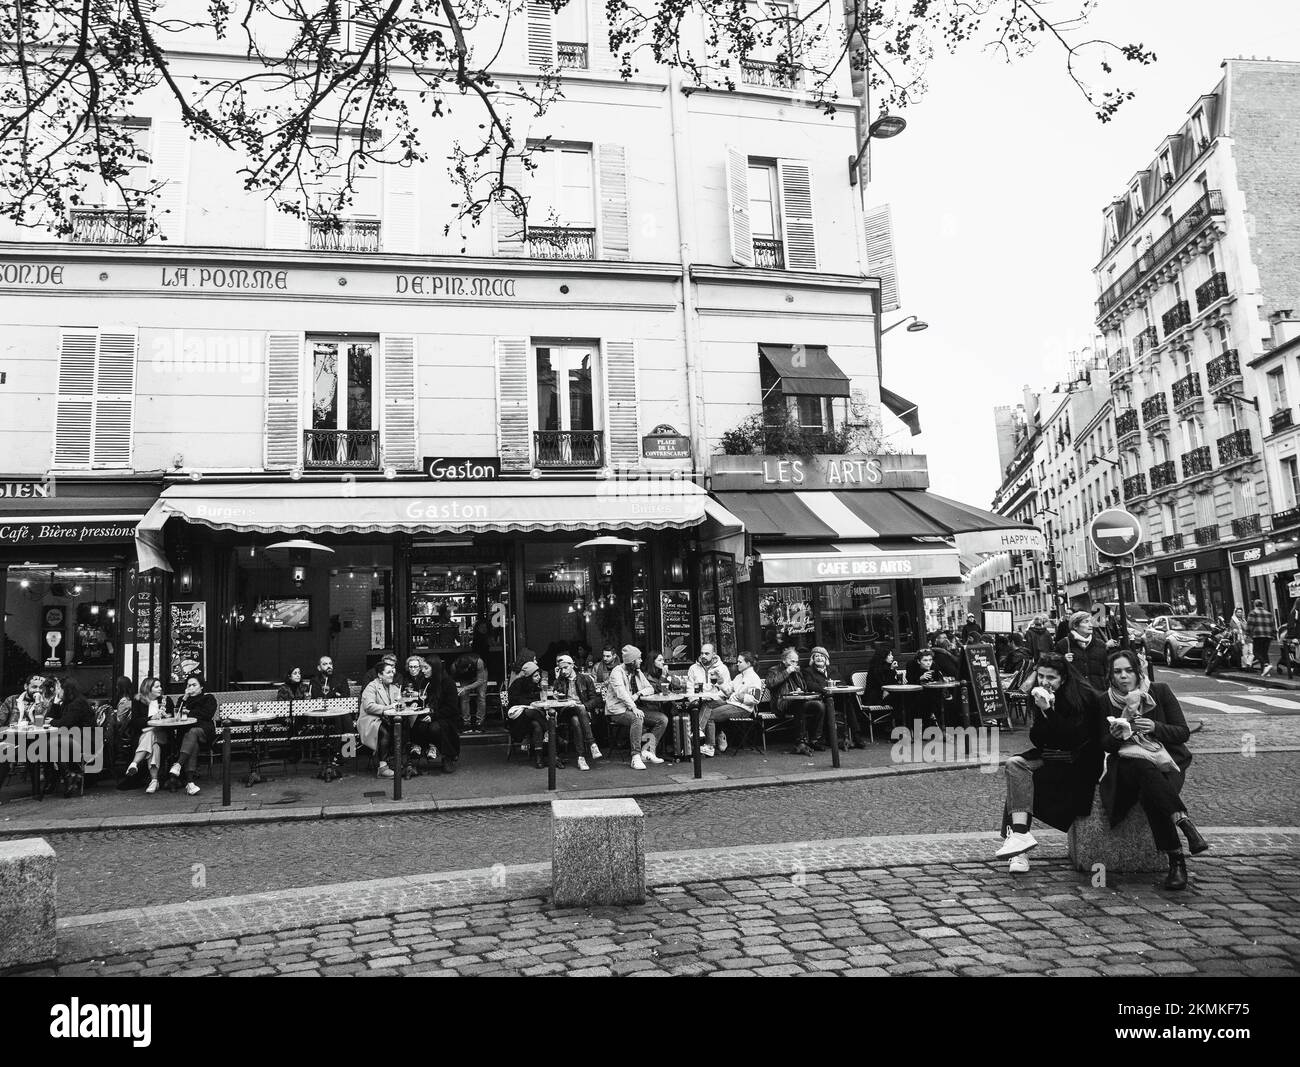 Paris, France - 13 novembre, 20212: Place de Contrescarpe près de la célèbre rue Mouffetard dans le quartier latin. Les gens ont un bon moment dans les cafés. Noir blanc Banque D'Images